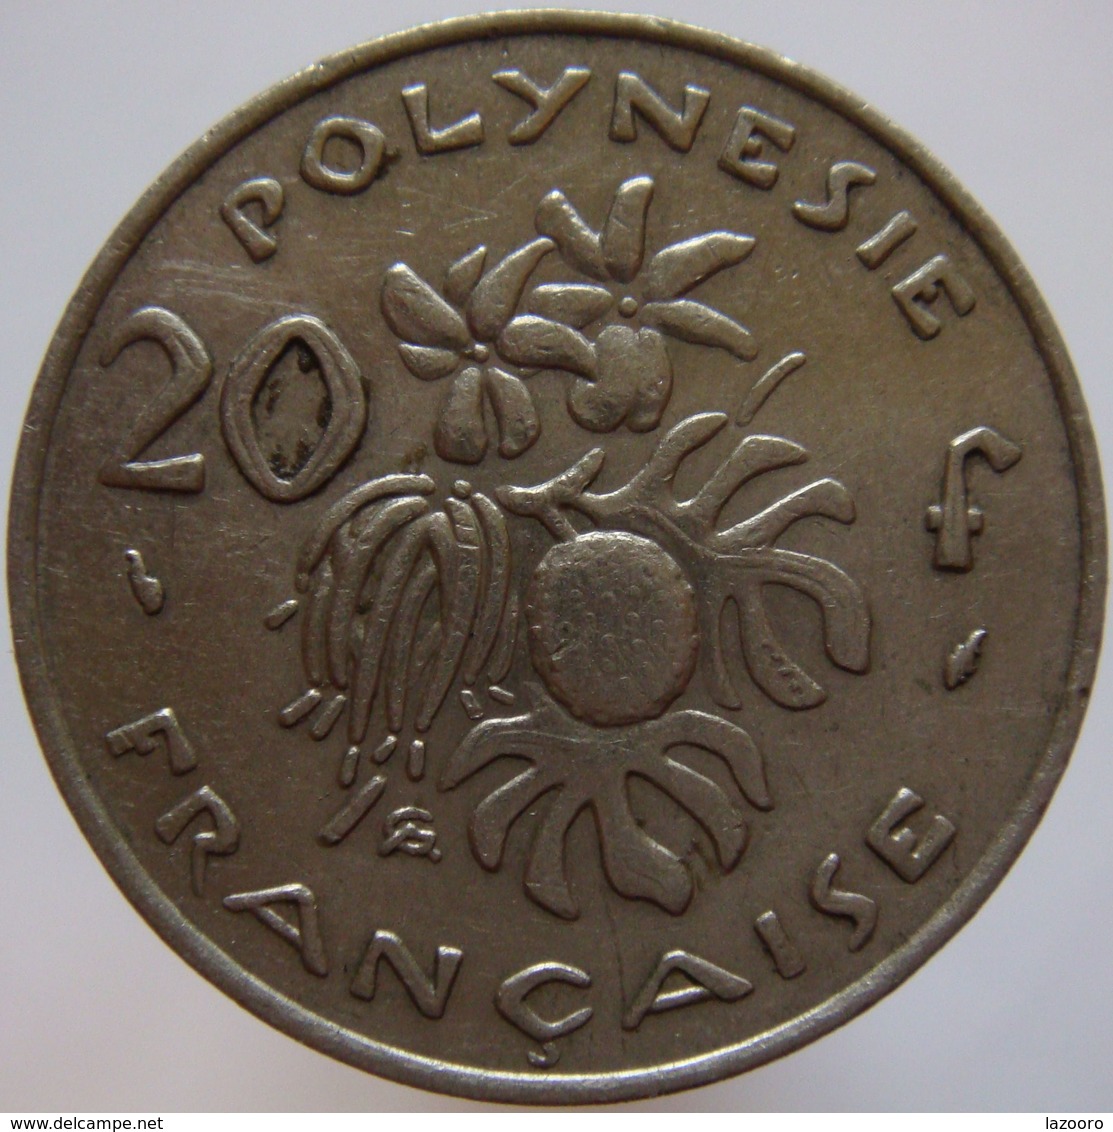 LaZooRo: French Polynesia 20 Francs 1975 VF / XF - Französisch-Polynesien